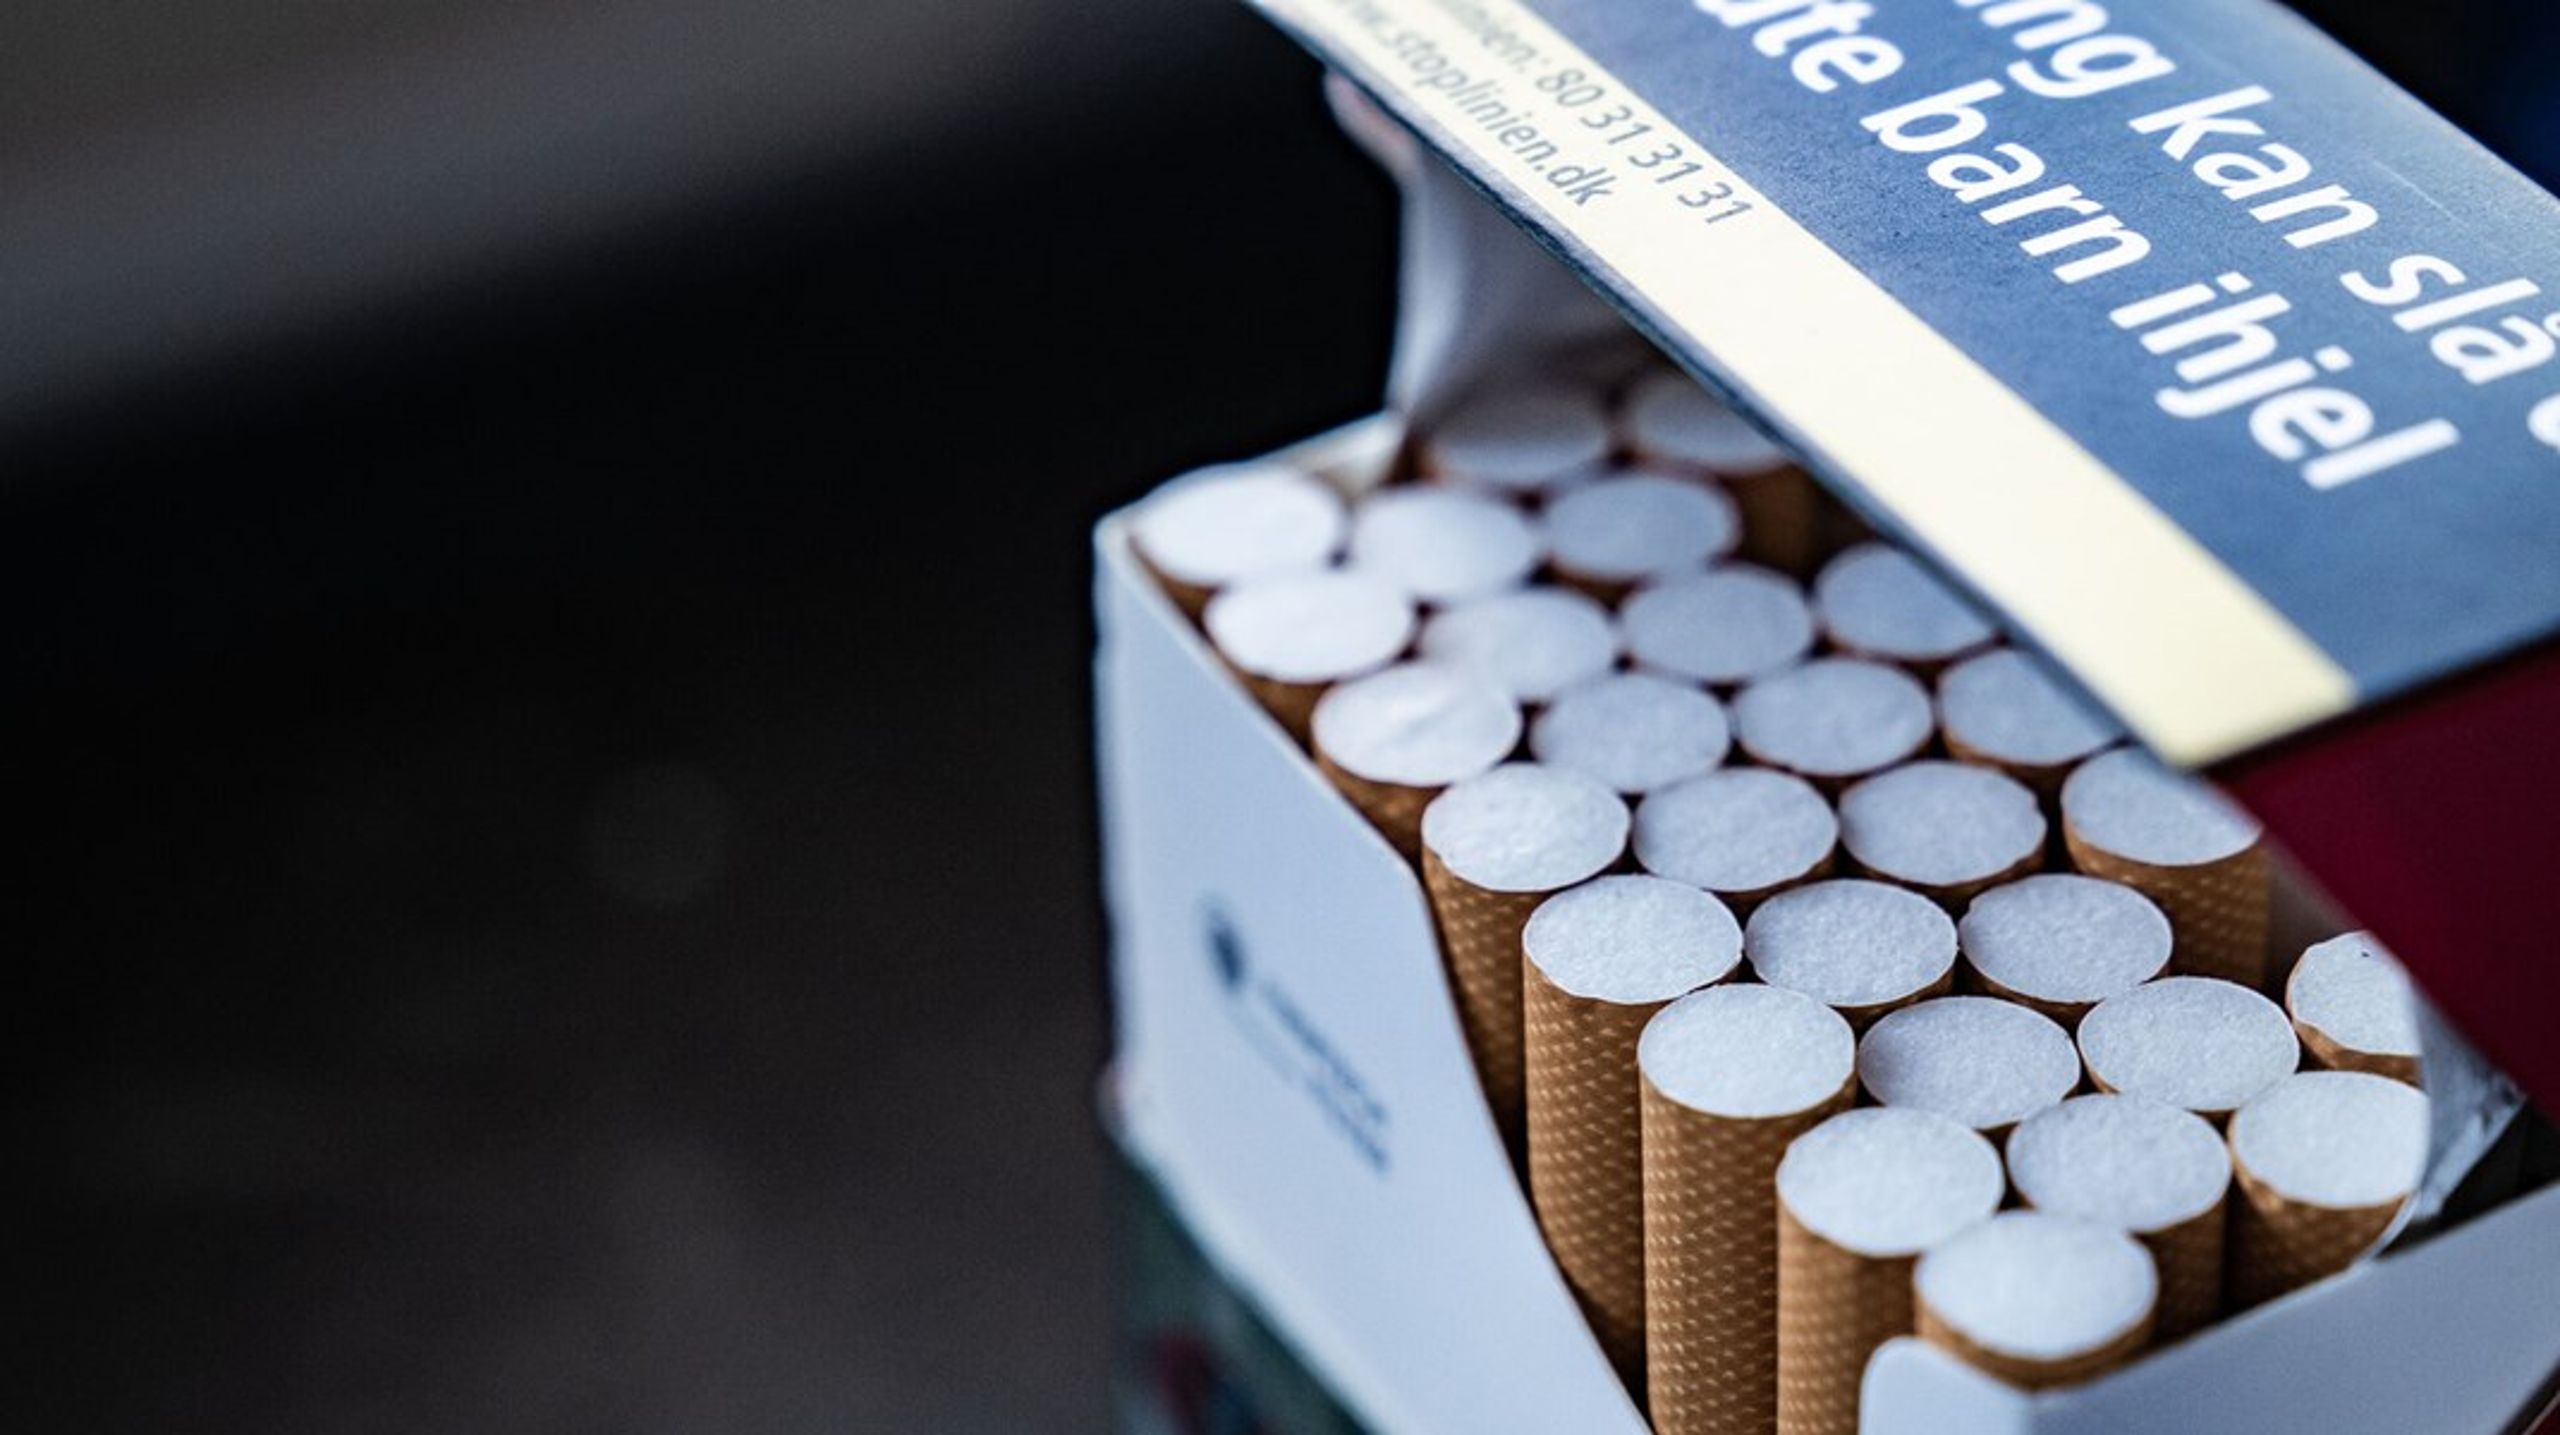 Der er internationalt stærk evidens for sammenhængen mellem prisen på tobak og forbruget af tobak. Især børn, unge og lavindkomstgrupper påvirkes af prisen på cigaretter, skriver Jesper Fisker.